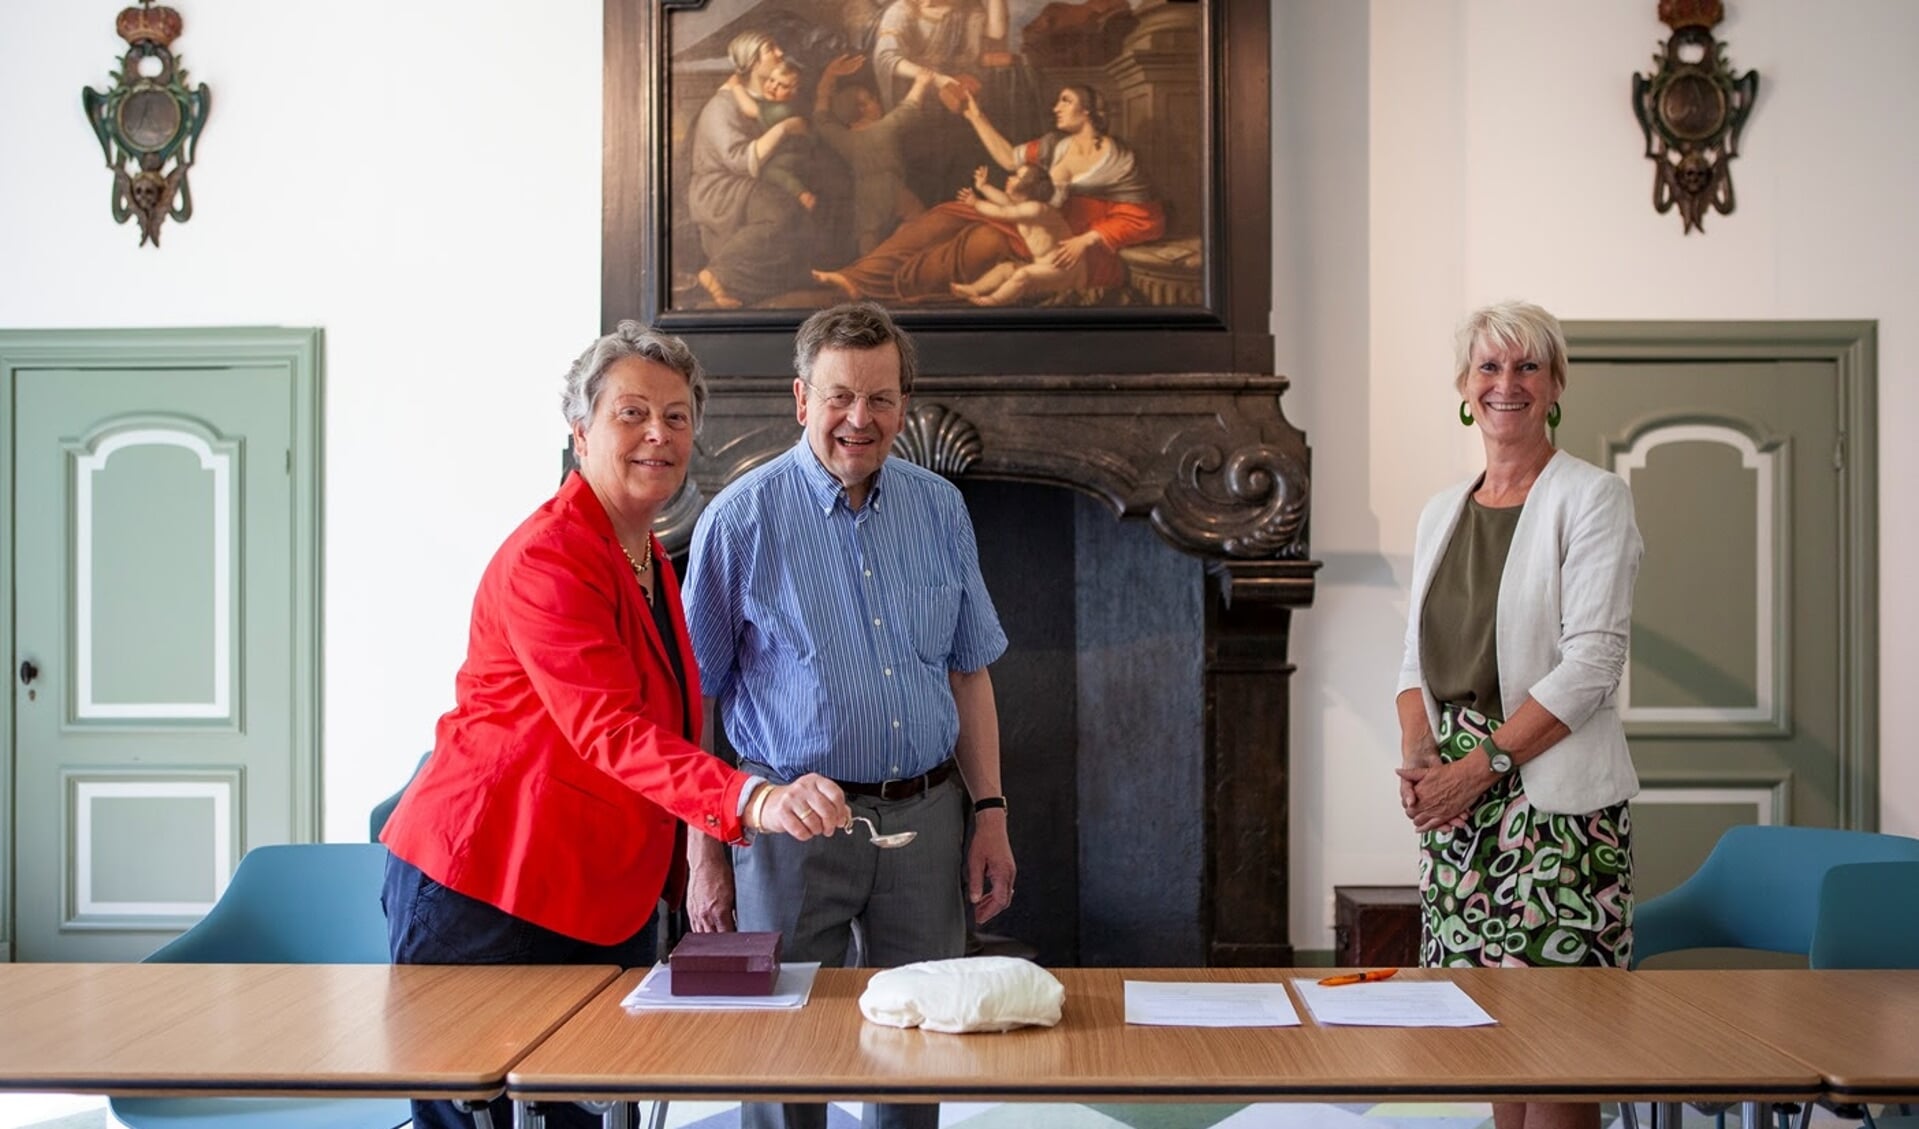 De heer C.W. Lely, mevrouw H.E. van Valkenburg-Lely en conservator Anita Jansen met de zilveren suikerstrooilepel. (Foto: Marco Zwinkels)